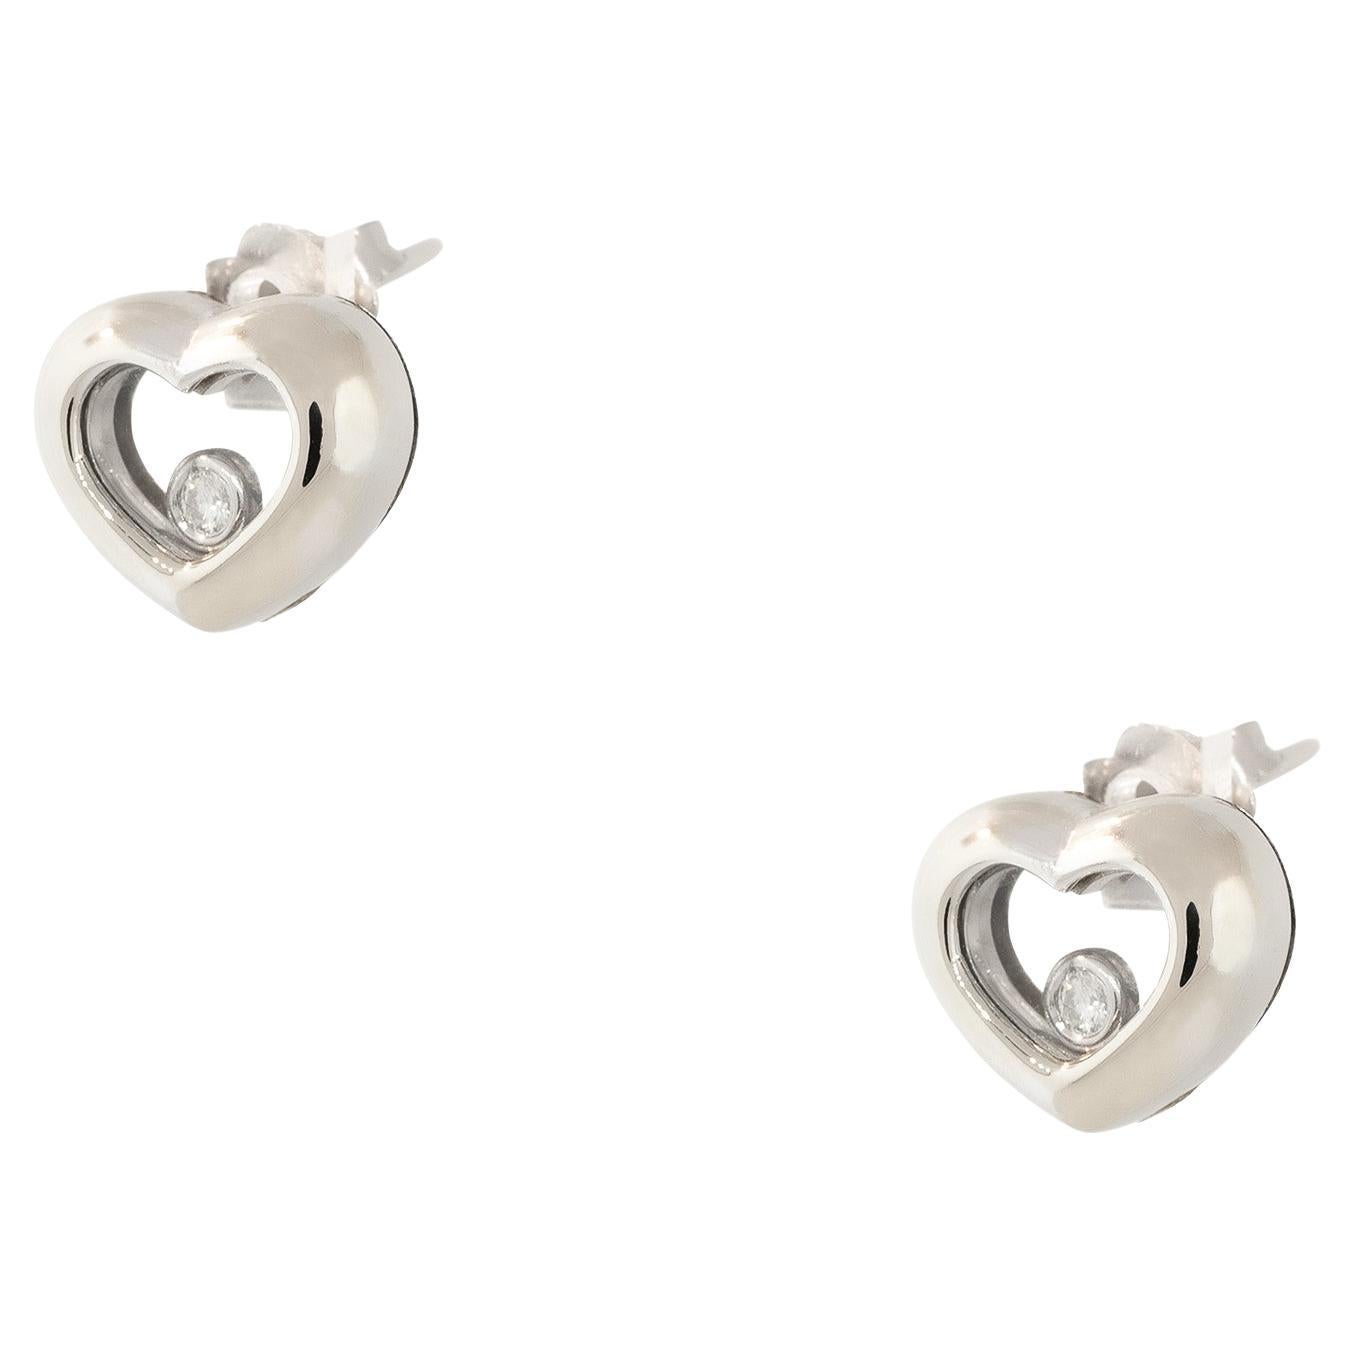 0.05 Carat Floating Diamond Heart Shaped Earrings 18 Karat In Stock For Sale